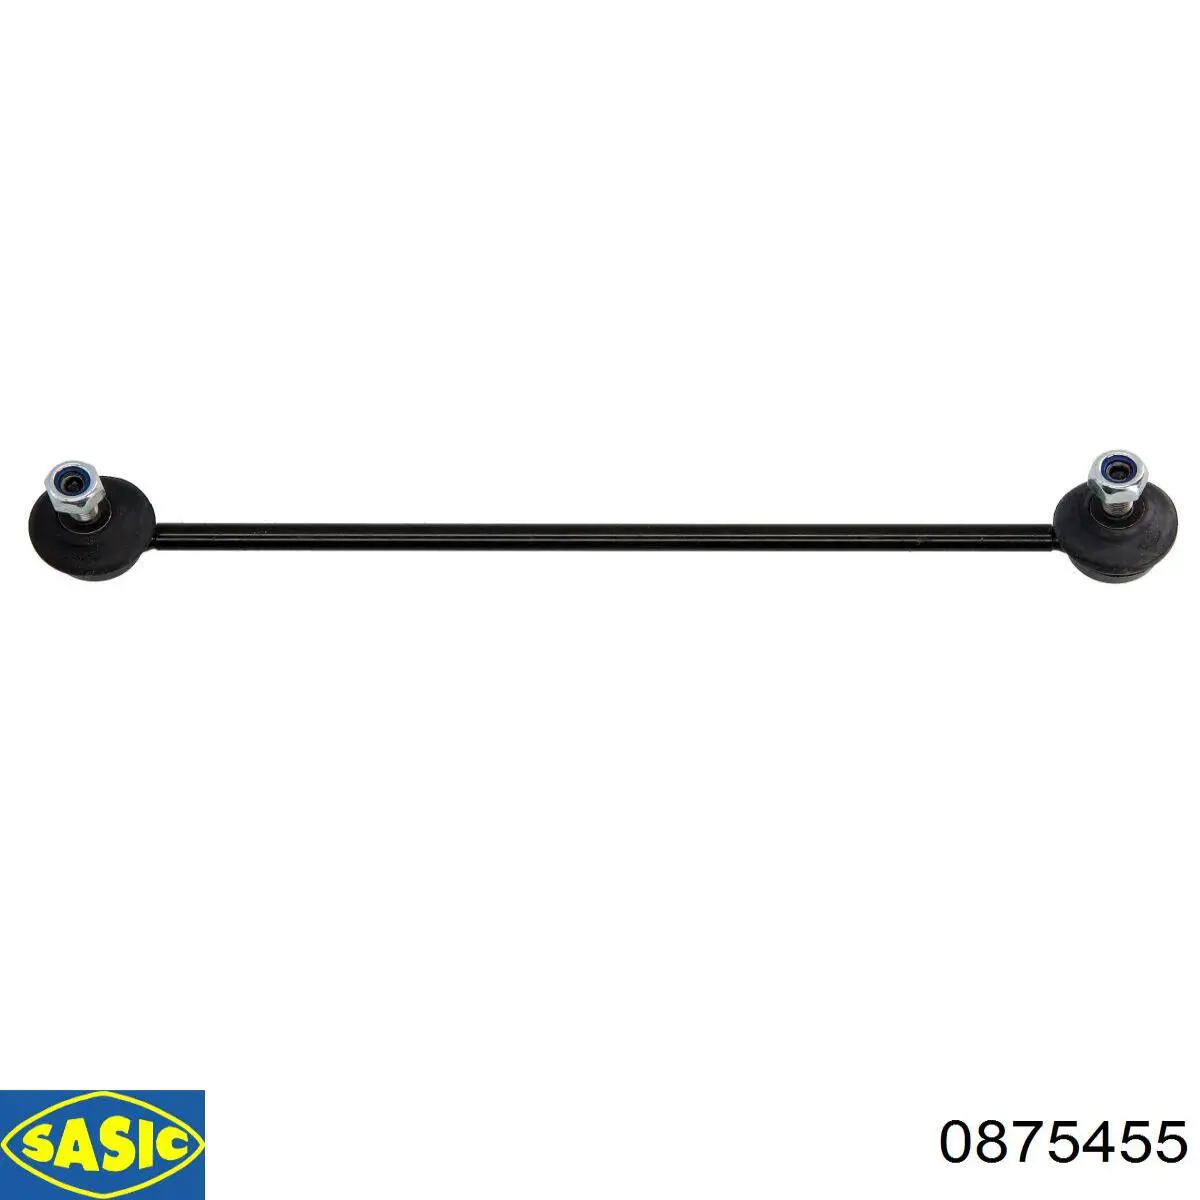 0875455 Sasic soporte de barra estabilizadora delantera